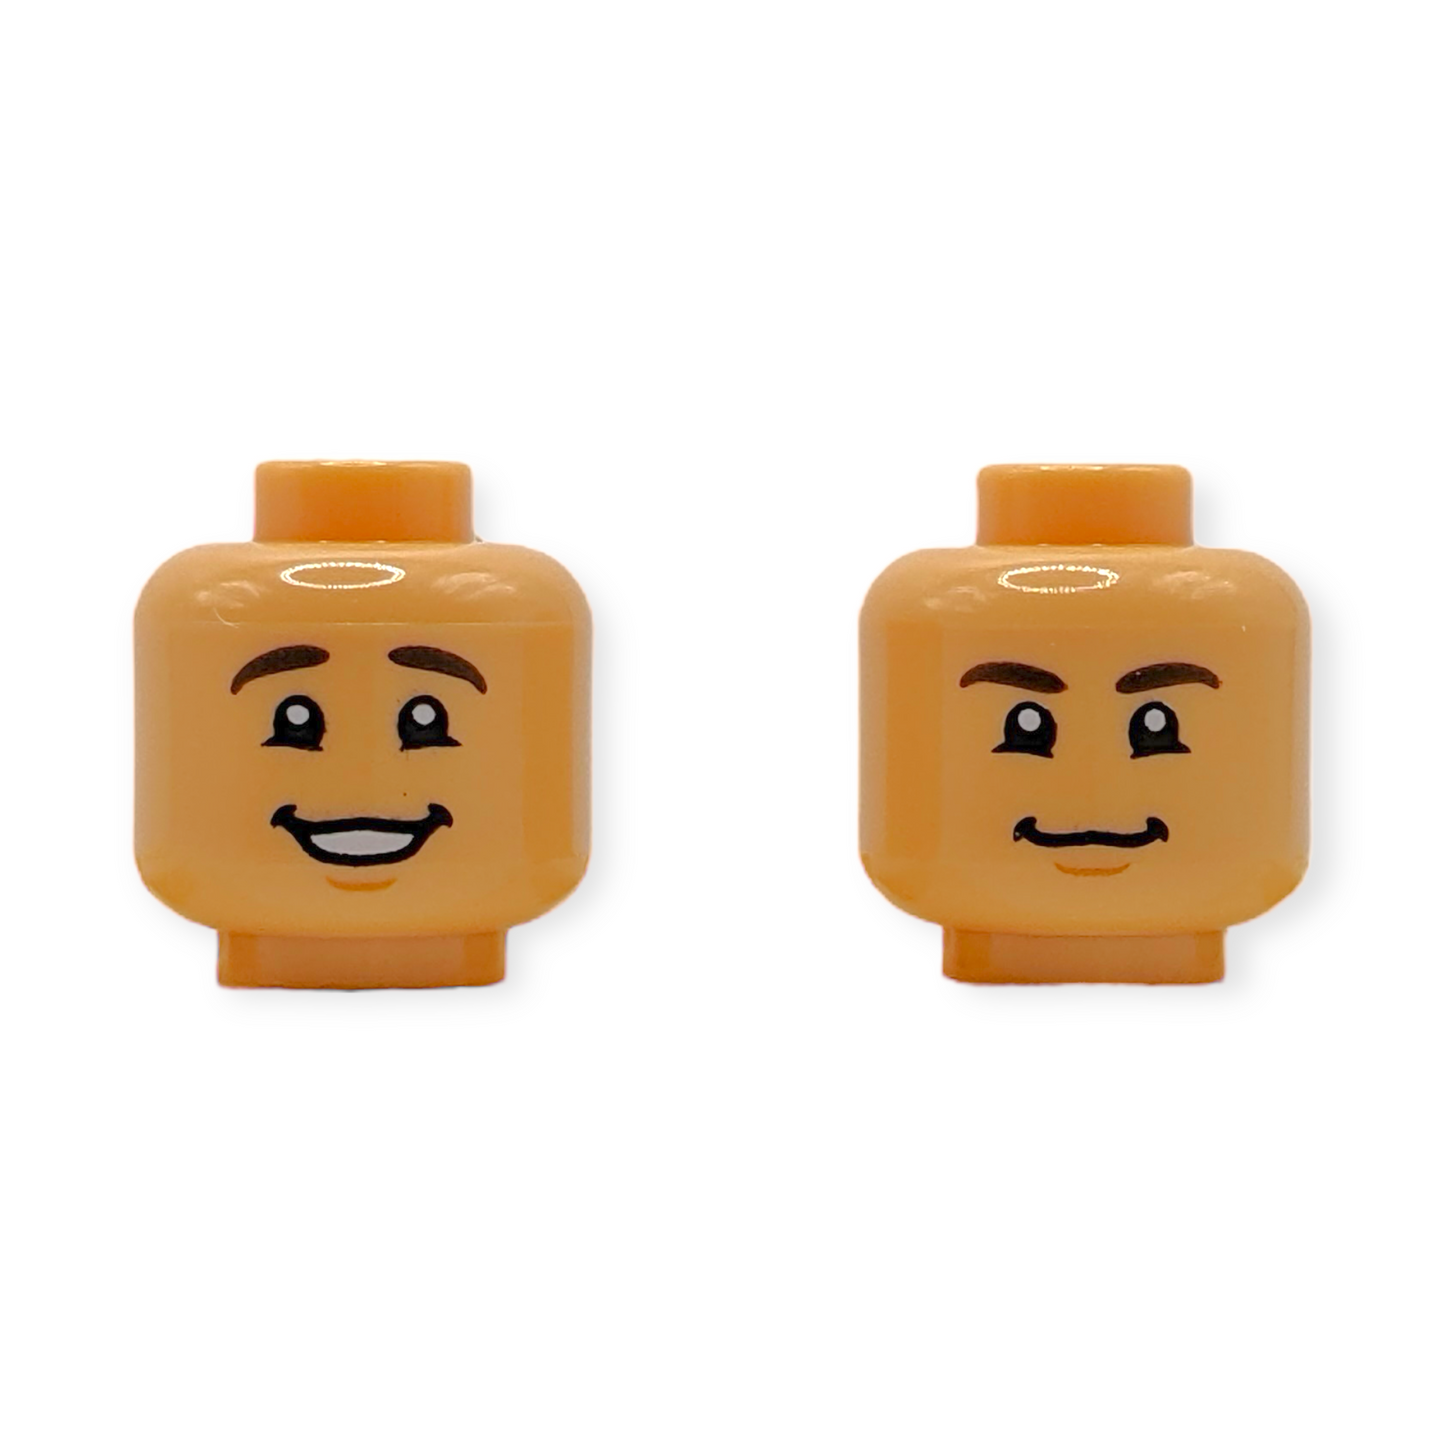 LEGO Head - 3869 Dual Sided Dark Brown Eyebrows